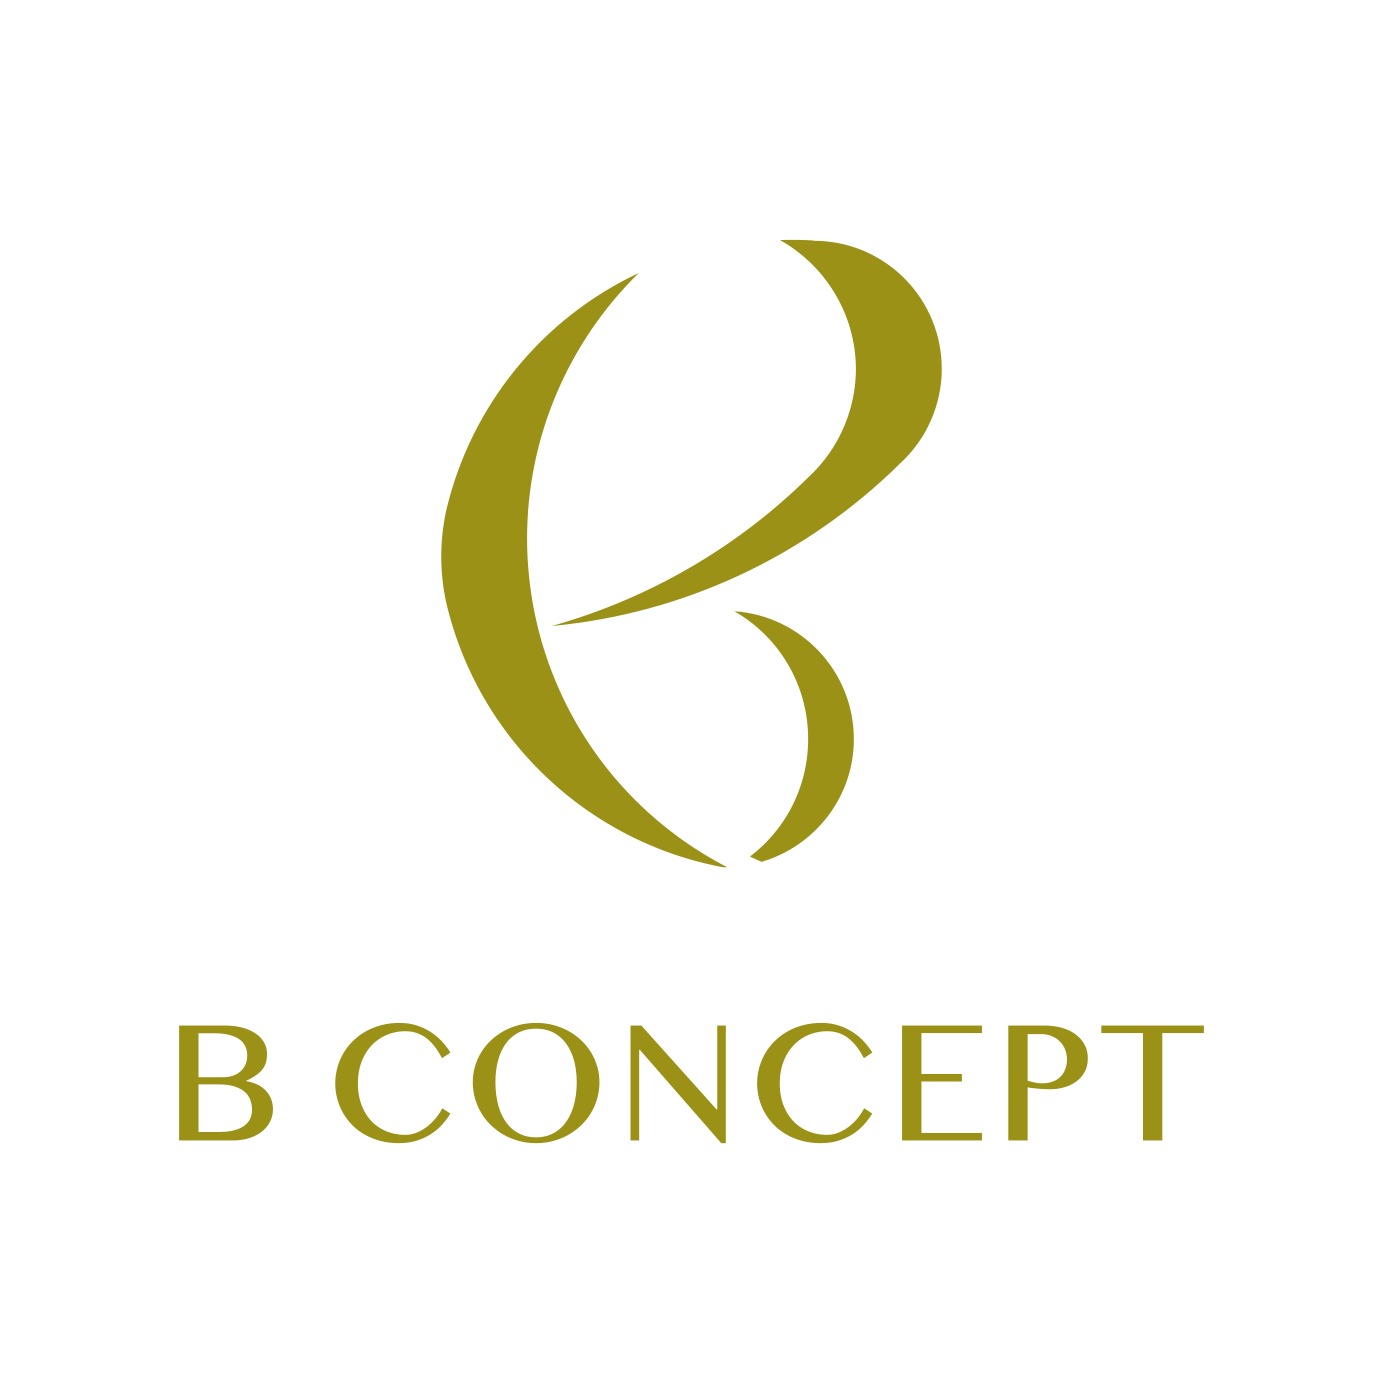 B-CONCEPT（ビーコンセプト）柏スタジオ